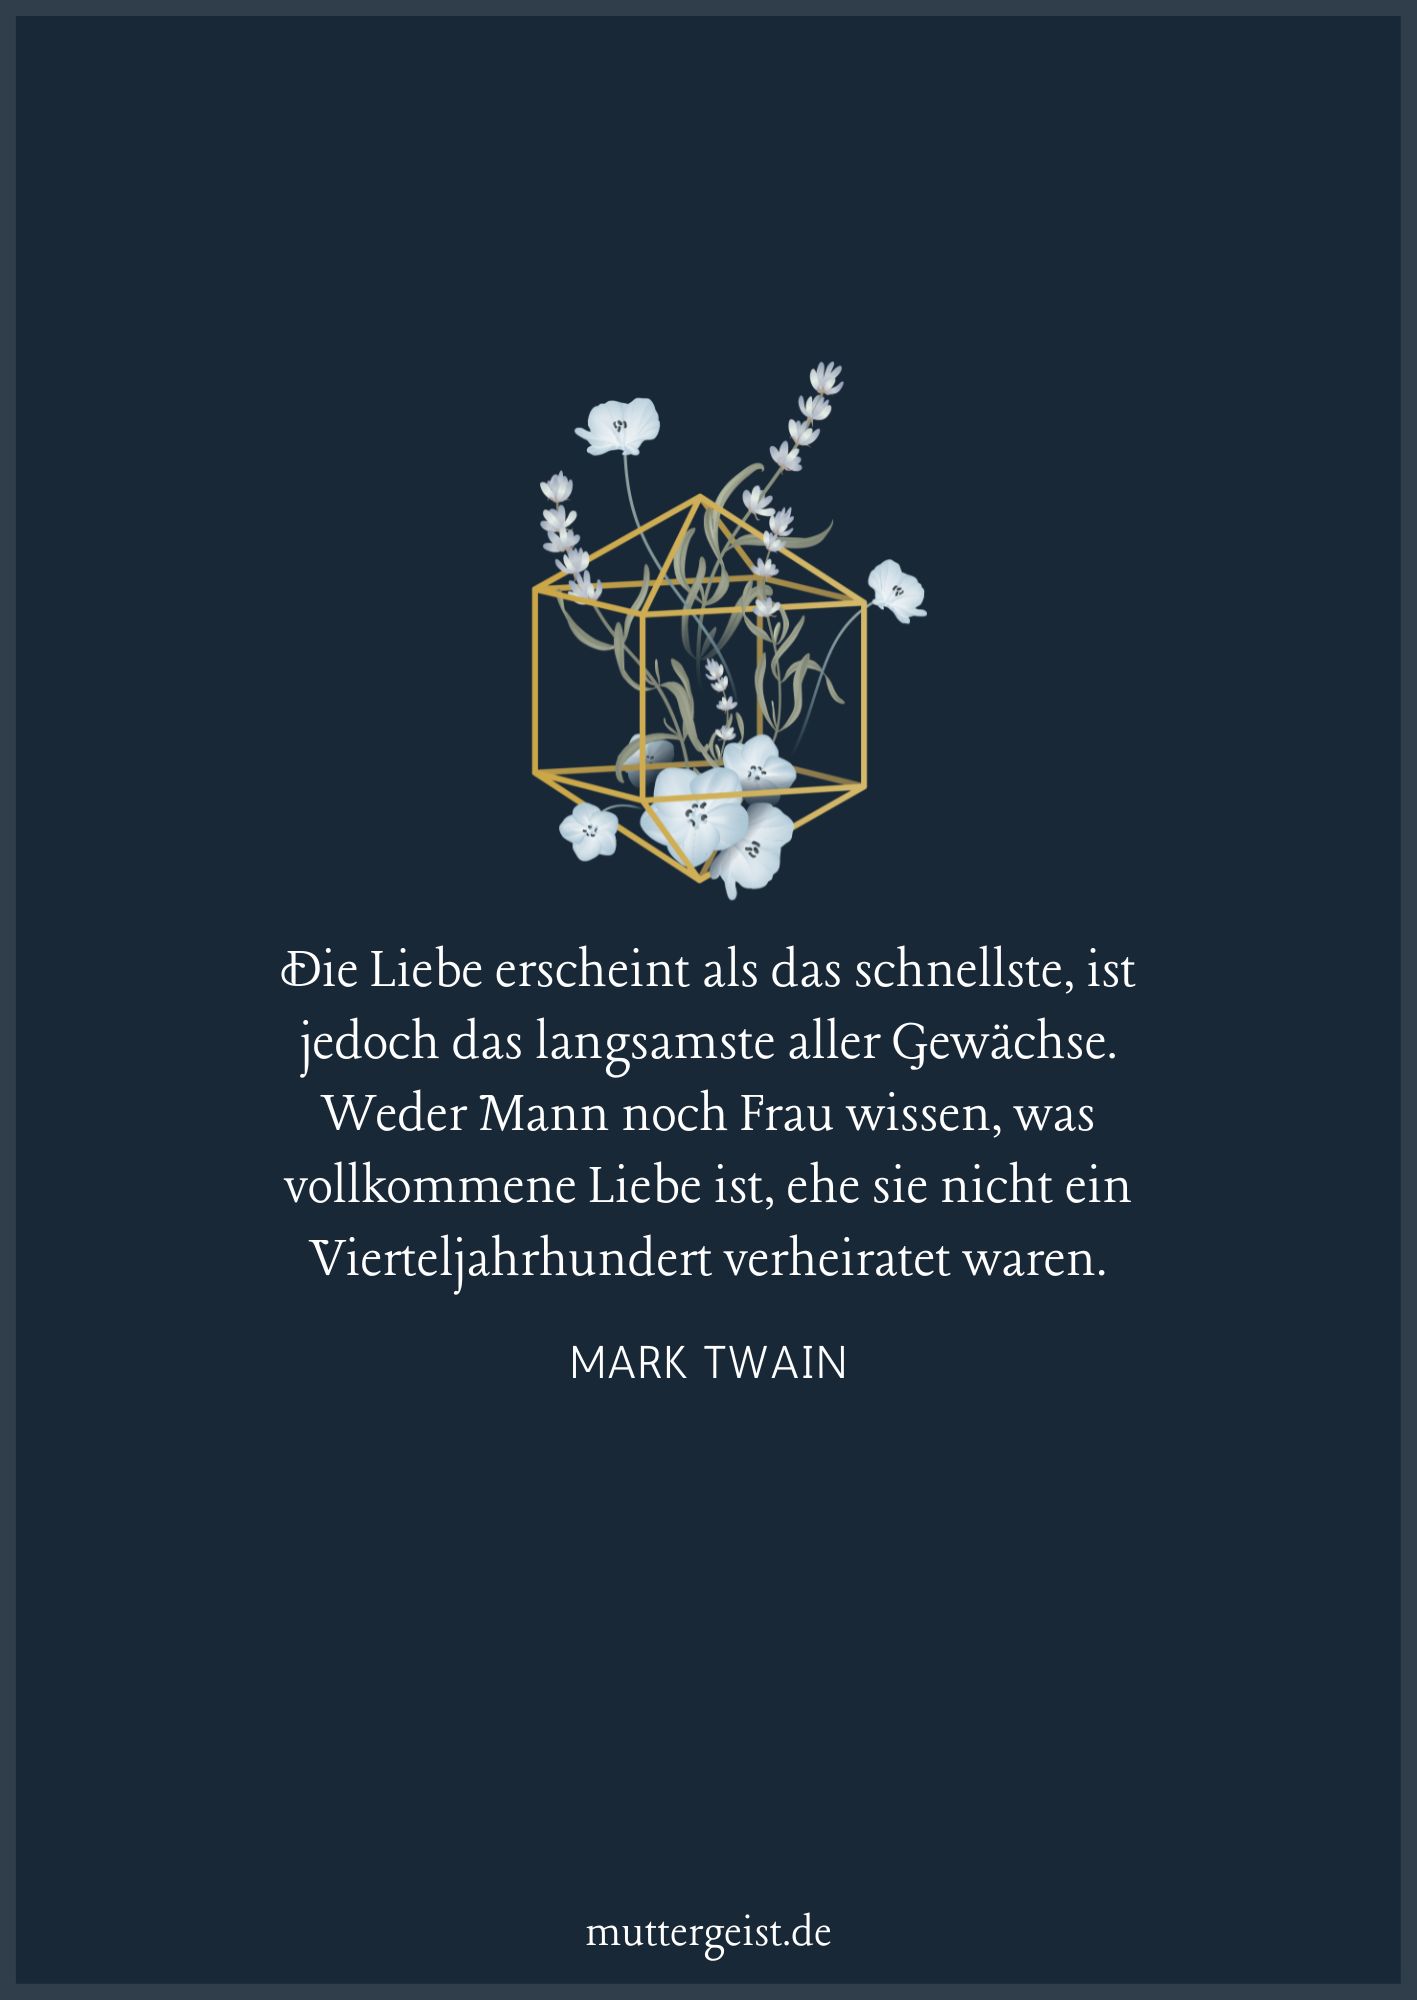 Mark Twain-Zitat über die Ehe